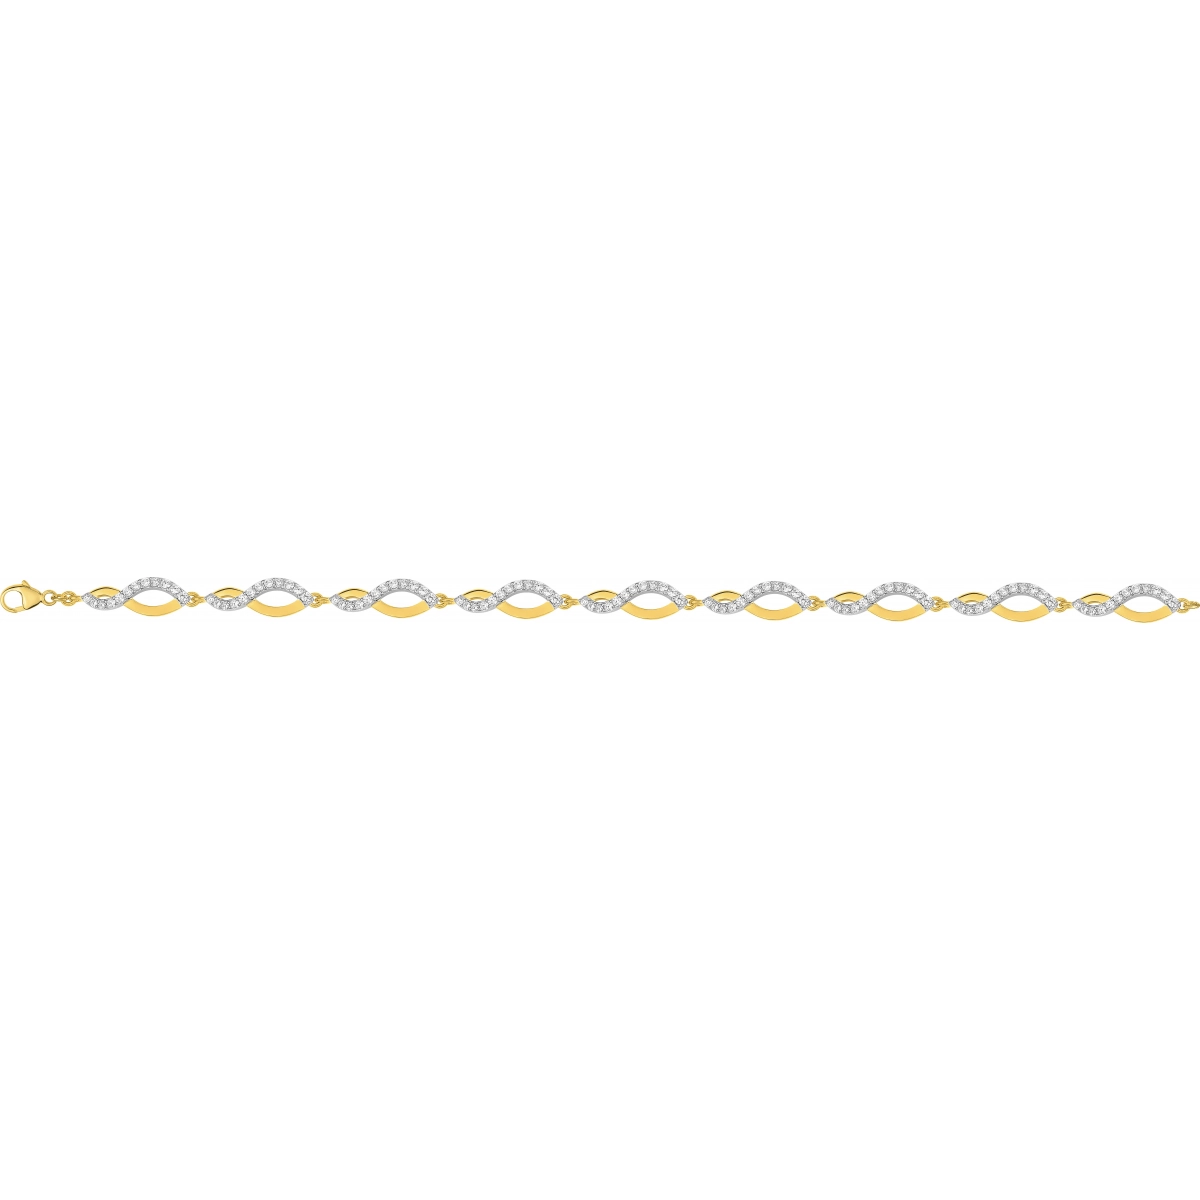 Bracelet 18cm w. cz gold plated Brass 2TG  Lua Blanca  BSBL57Z18.0